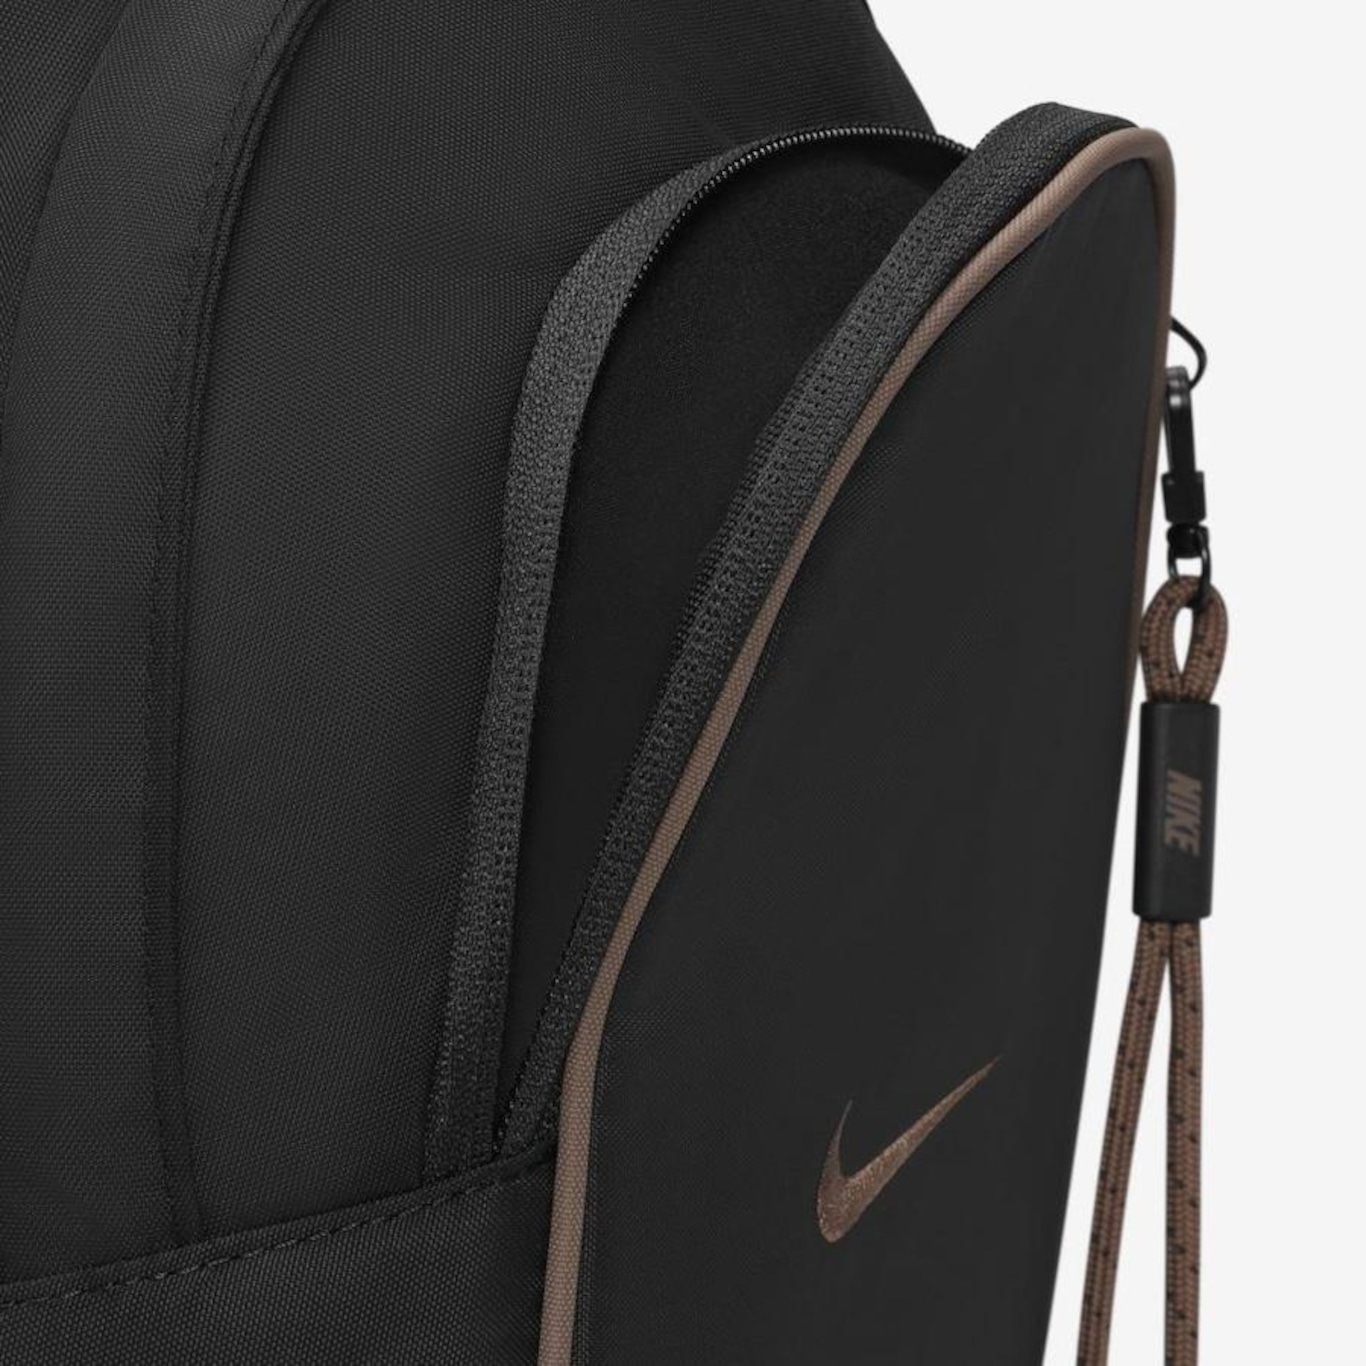 Shoulder Bag Nike Sportswear Essentials - 1 Litros em Promoção